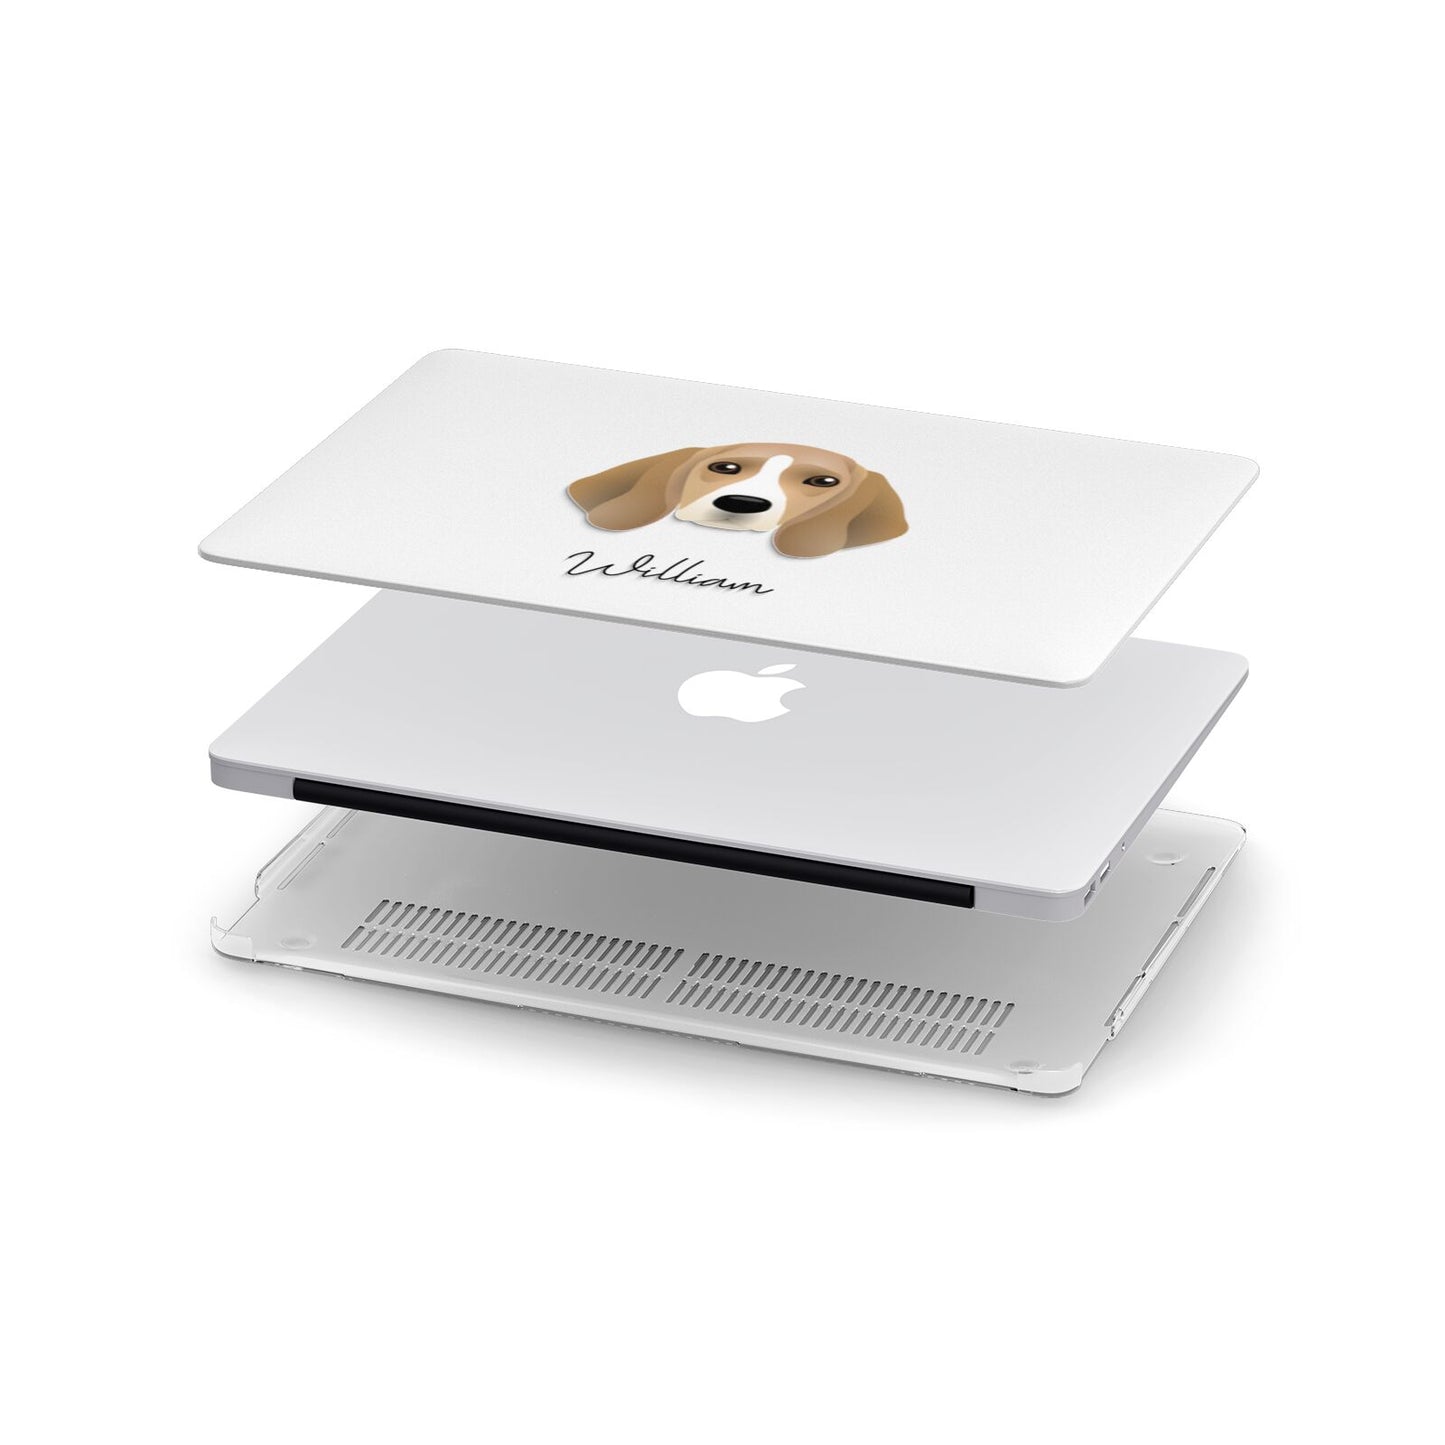 Beagle Personalised Apple MacBook Case in Detail